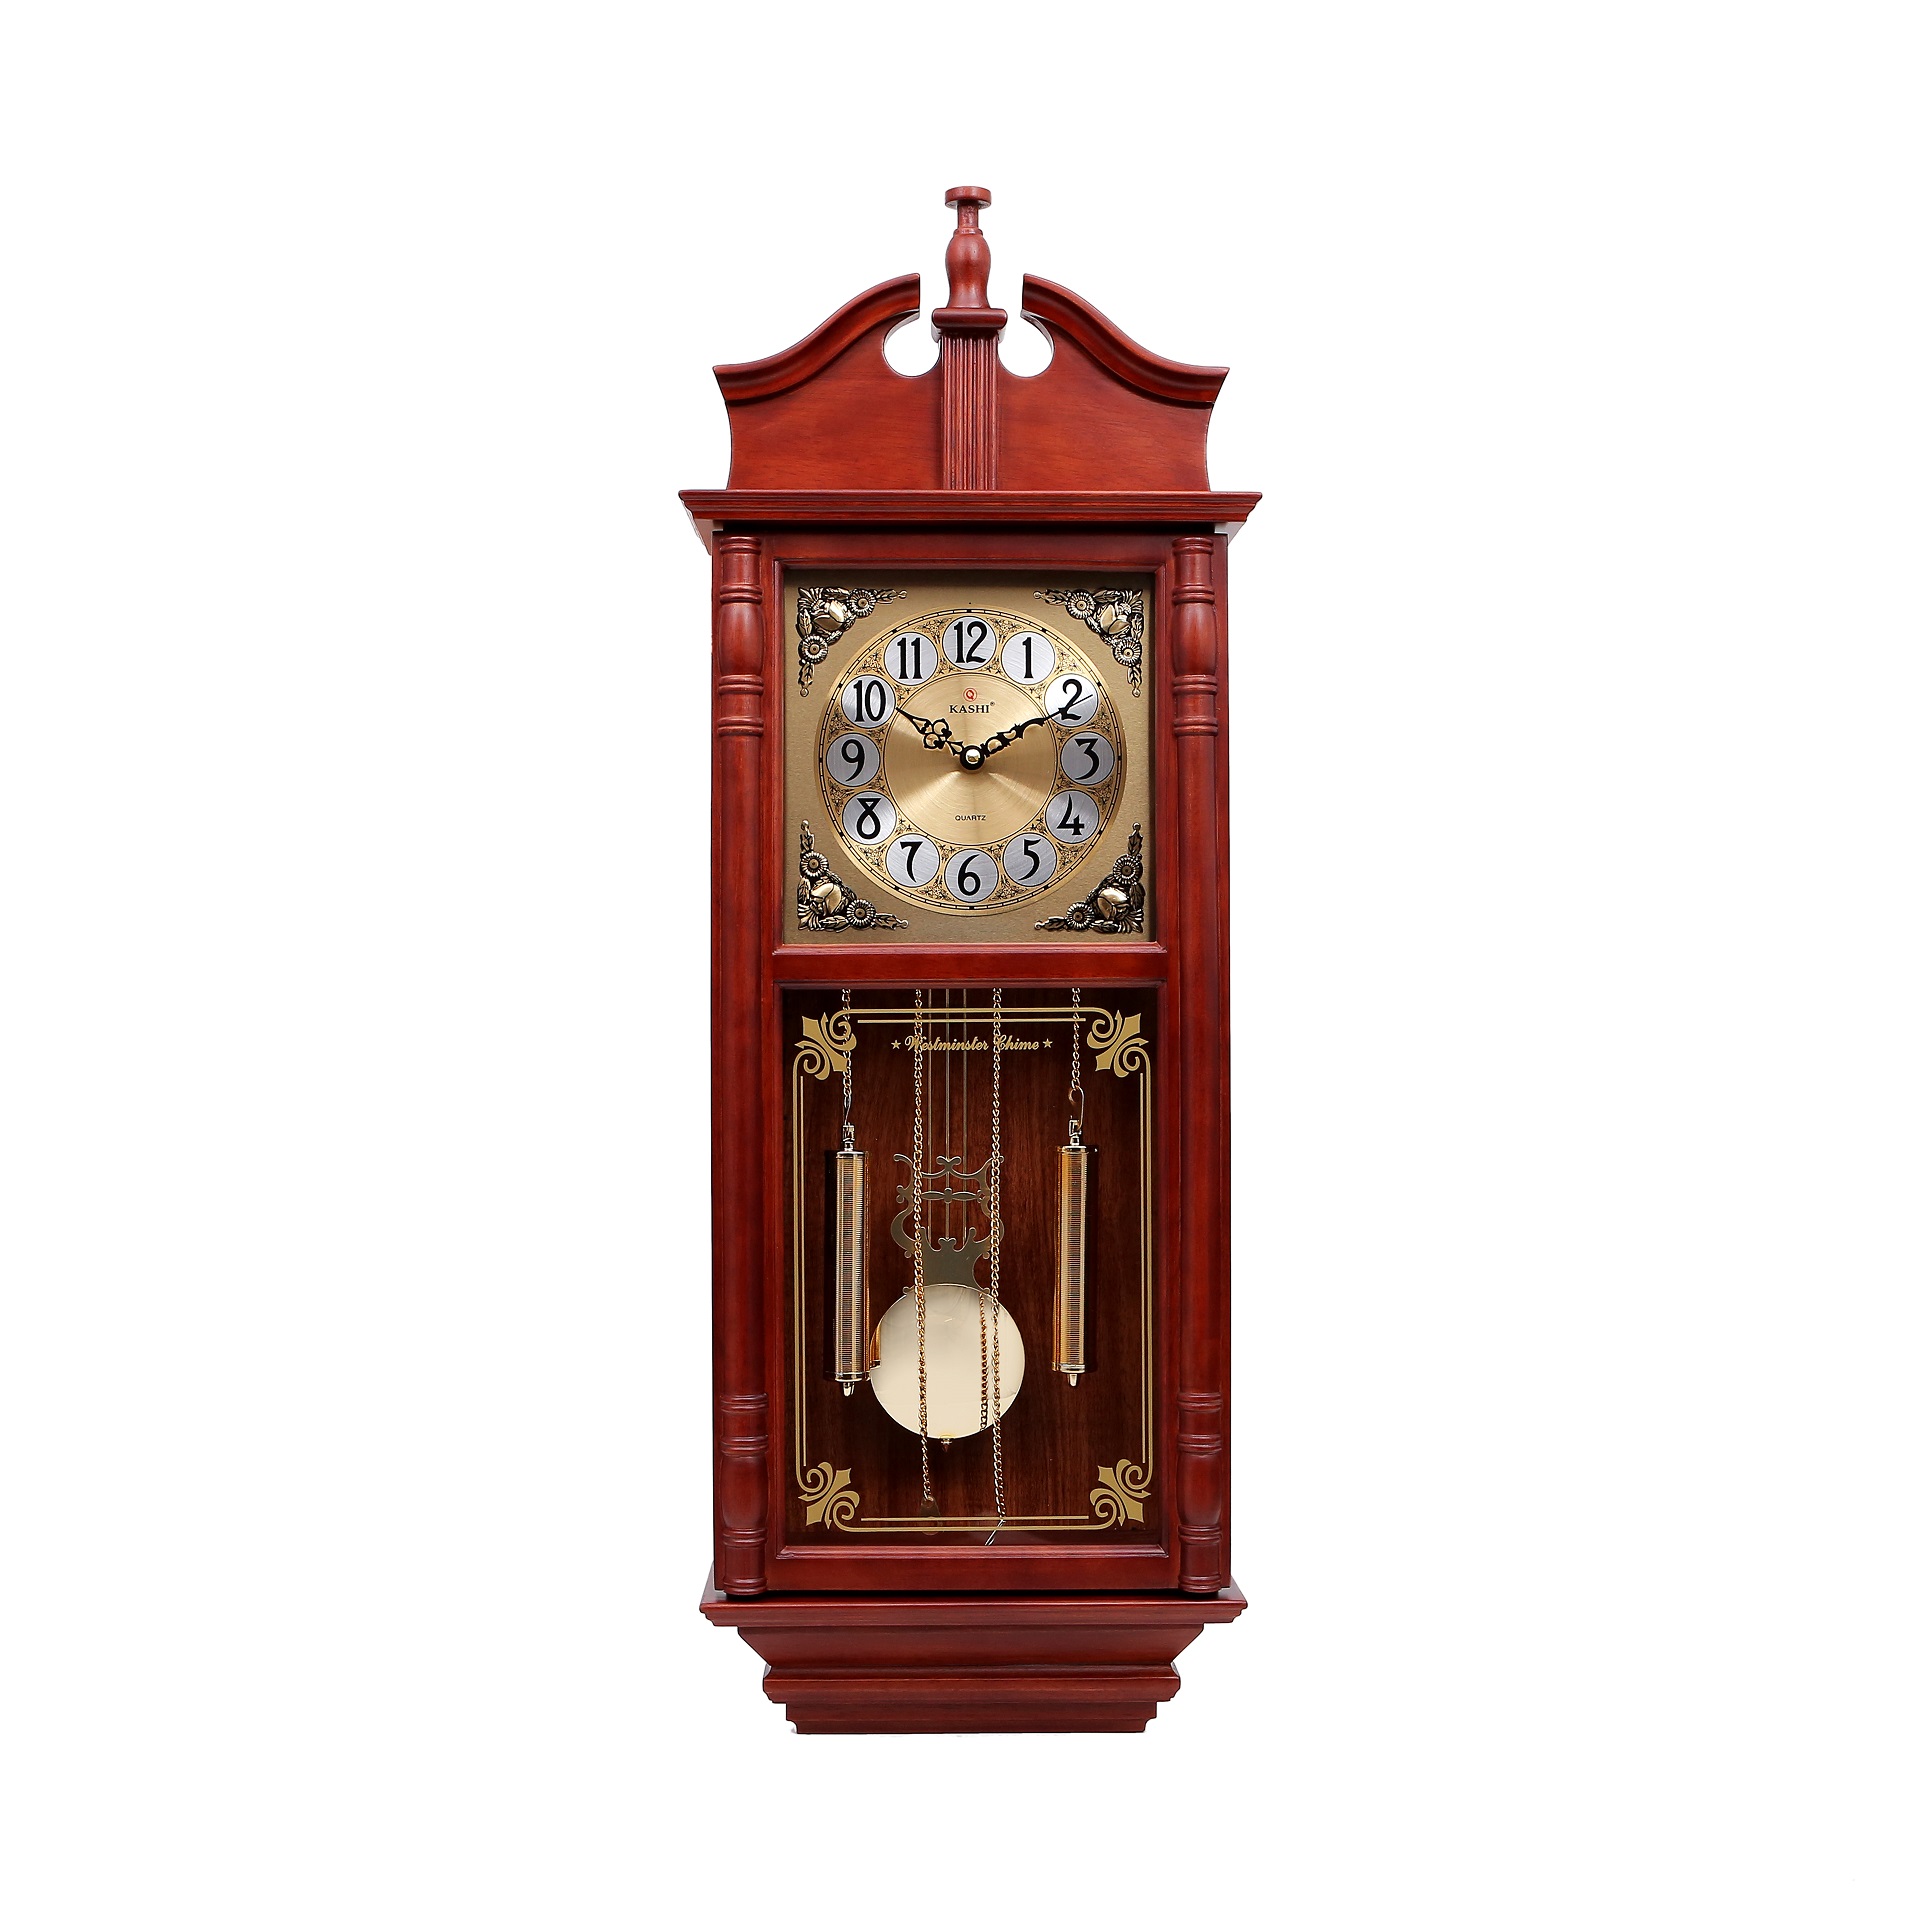 Đồng hồ treo tường quả lắc KN627 Kashi Clock (không cần cập nhật): Với sự kết hợp giữa ẩn dụ và chất liệu kim loại cao cấp, đồng hồ treo tường quả lắc KN627 của Kashi Clock đã từng làm say đắm lòng người. Sản phẩm này vẫn được giữ nguyên thiết kế và chất lượng, đảm bảo sẽ làm bạn hài lòng và ấn tượng từ cái nhìn đầu tiên.